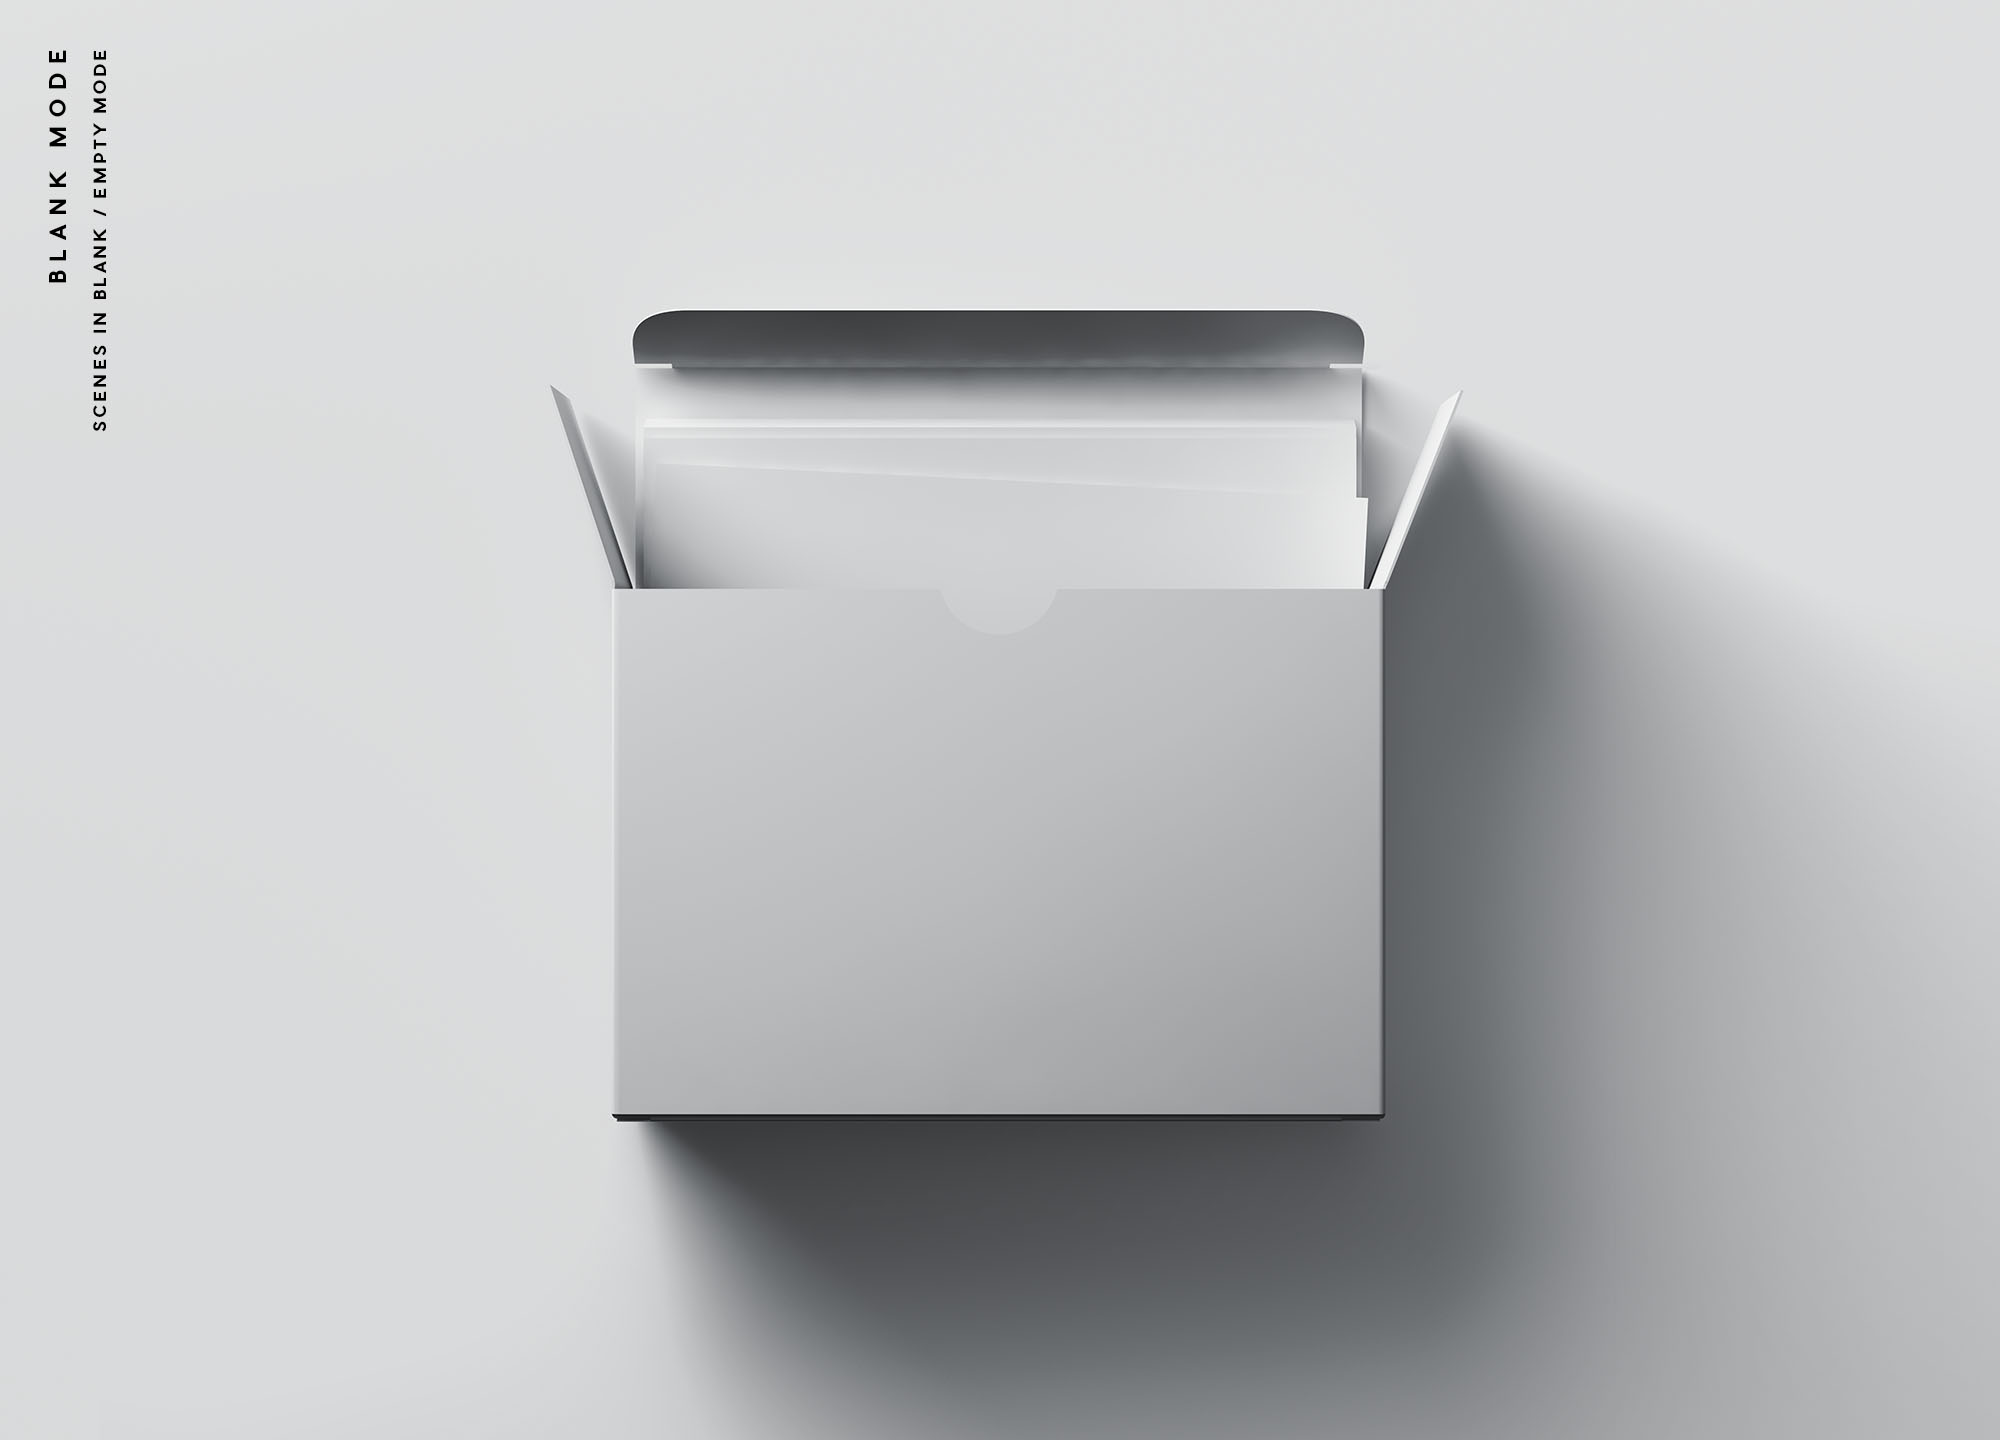 卡片包装盒外观设计效果图素材中国精选 Card Box Mockup插图(8)